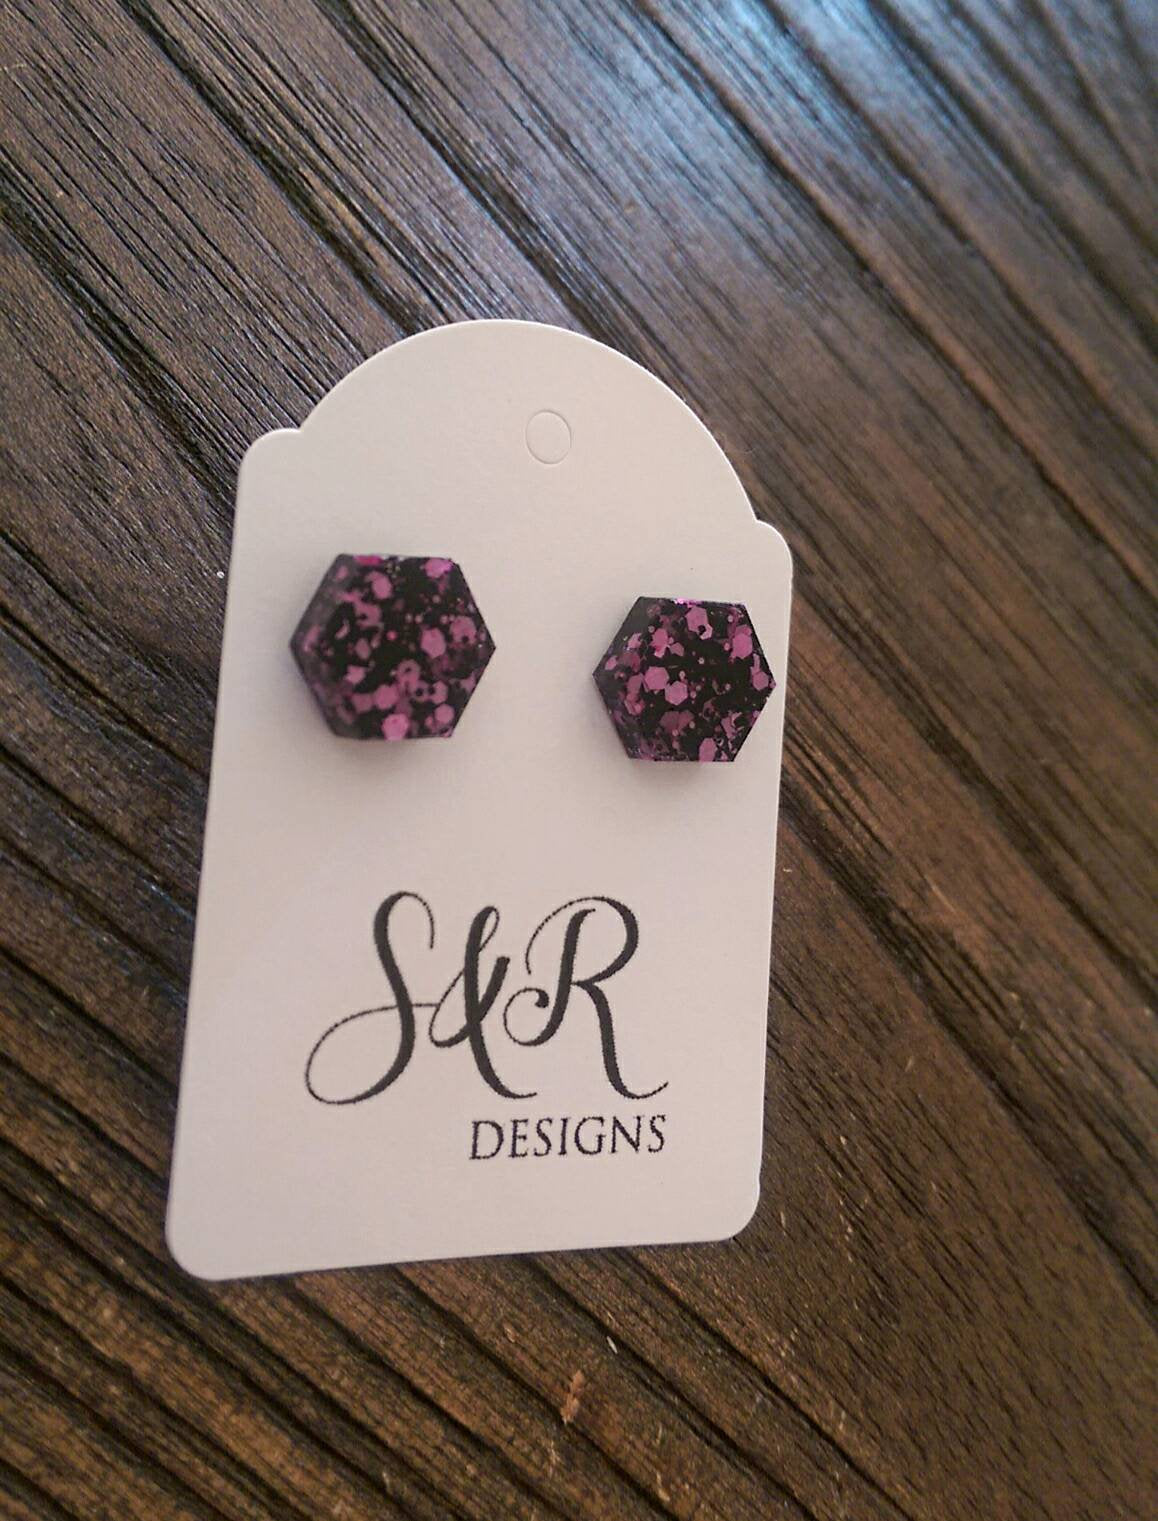 Hexagon Resin Stud Earrings, Pink Black Glitter Earrings. Stainless Steel Stud Earrings. 10mm or 6mm